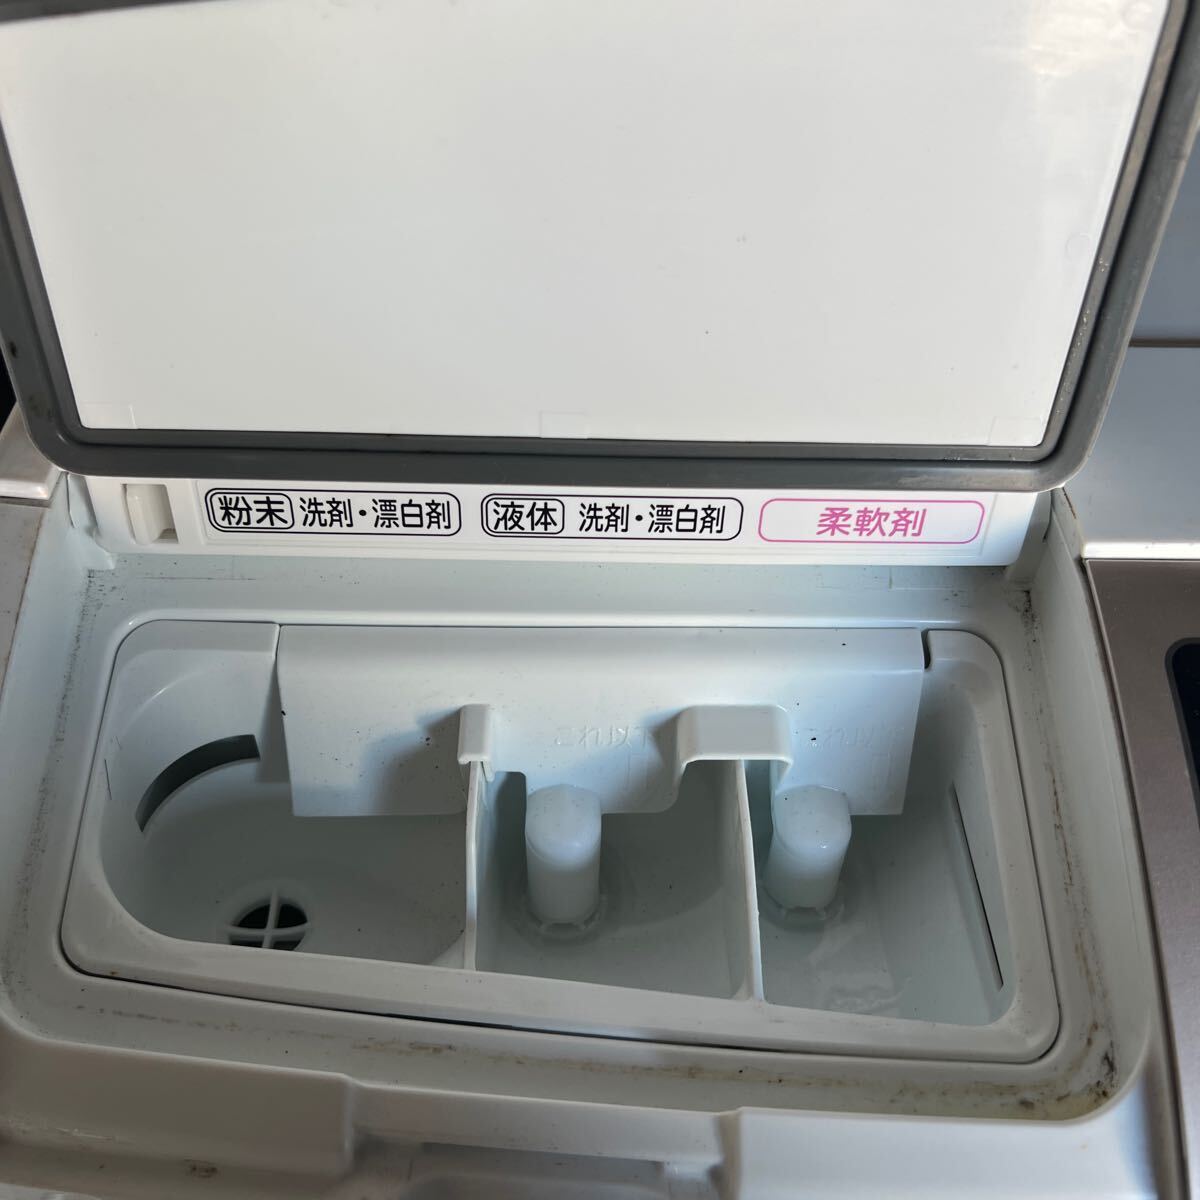 * HITACHI Hitachi электрический стирка сушильная машина BD-SV110BL 2018 год производства 11kg левый открытие 